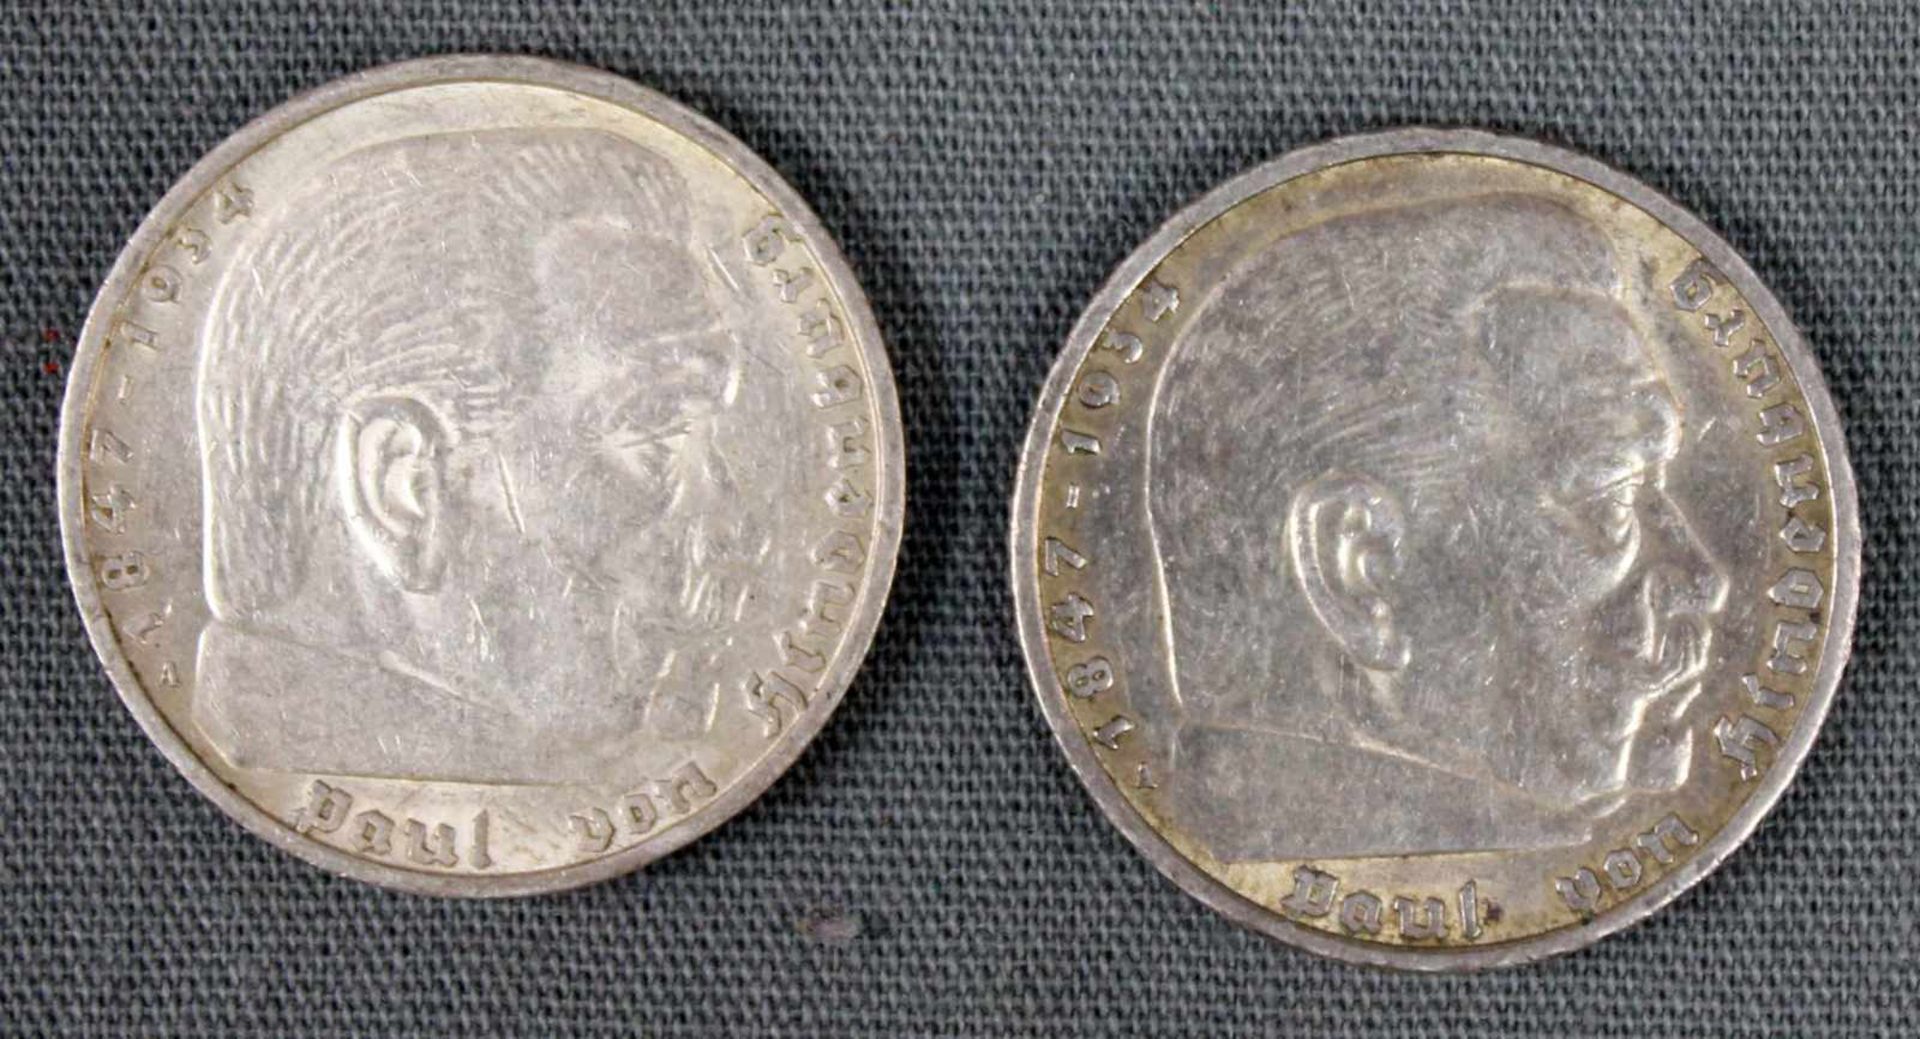 2 Stück. 5 Reichsmark, 1936 und 1938. Paul von Hindenburg. Die beiden Silbermünzen wiegen zusammen